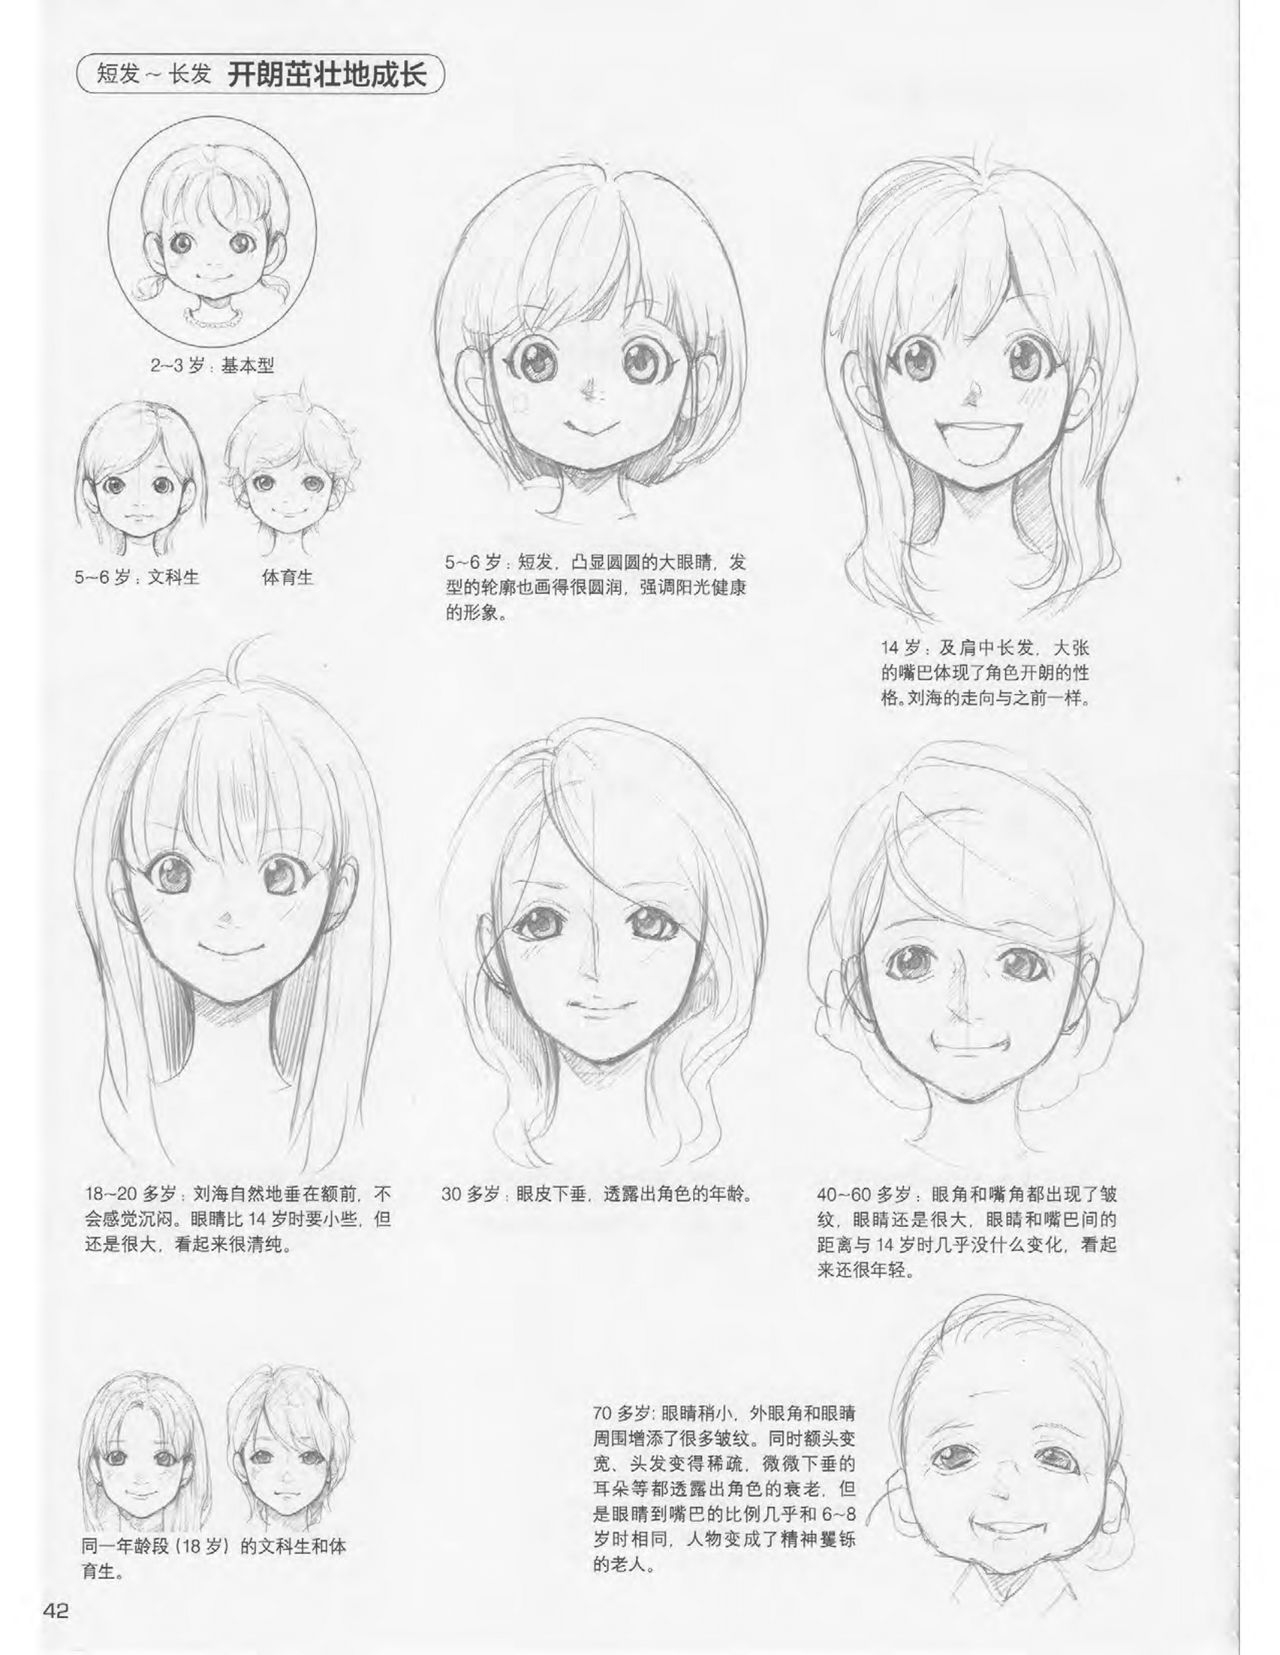 Japanese Manga Master Lecture 3: Lin Akira and Kakumaru Maru Talk About Glamorous Character Modeling 42